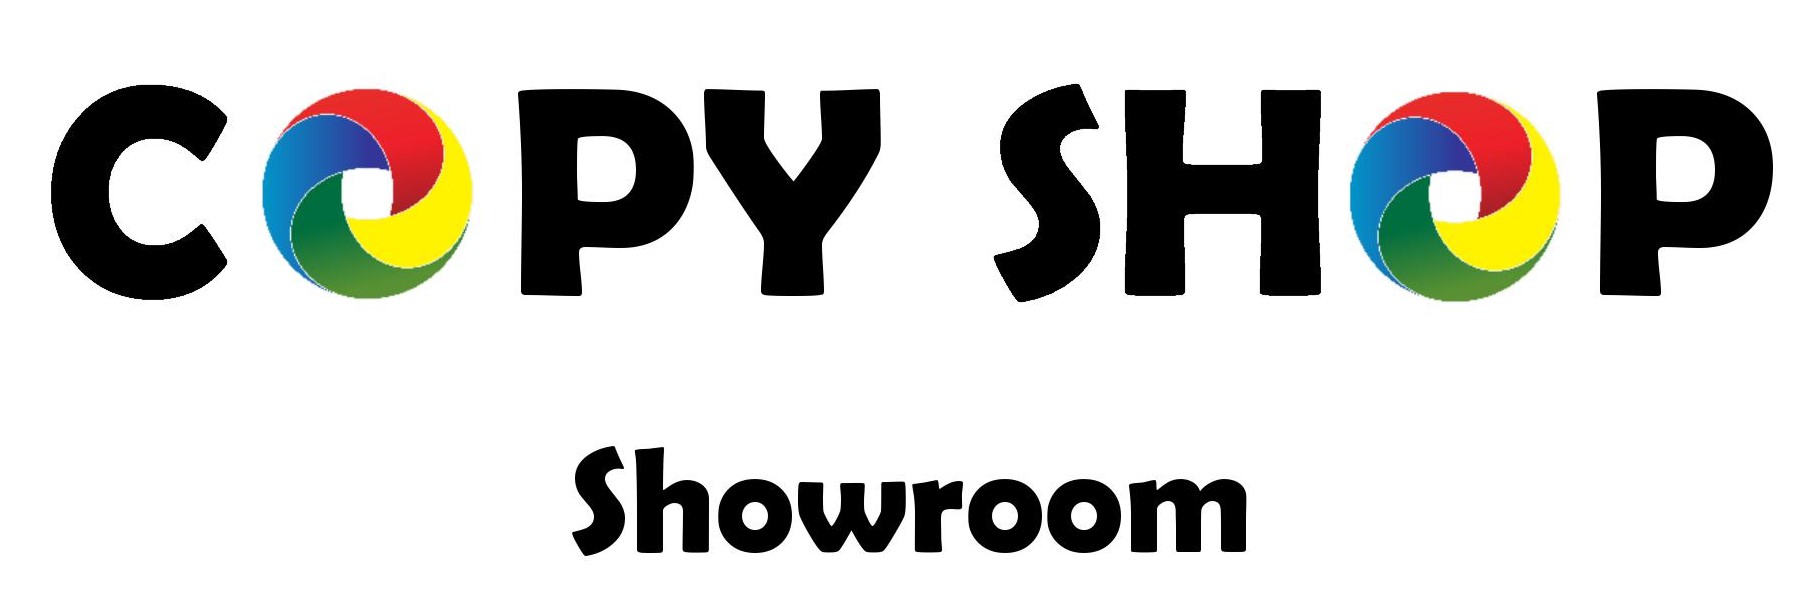 Copy Shop Chur Showroom 